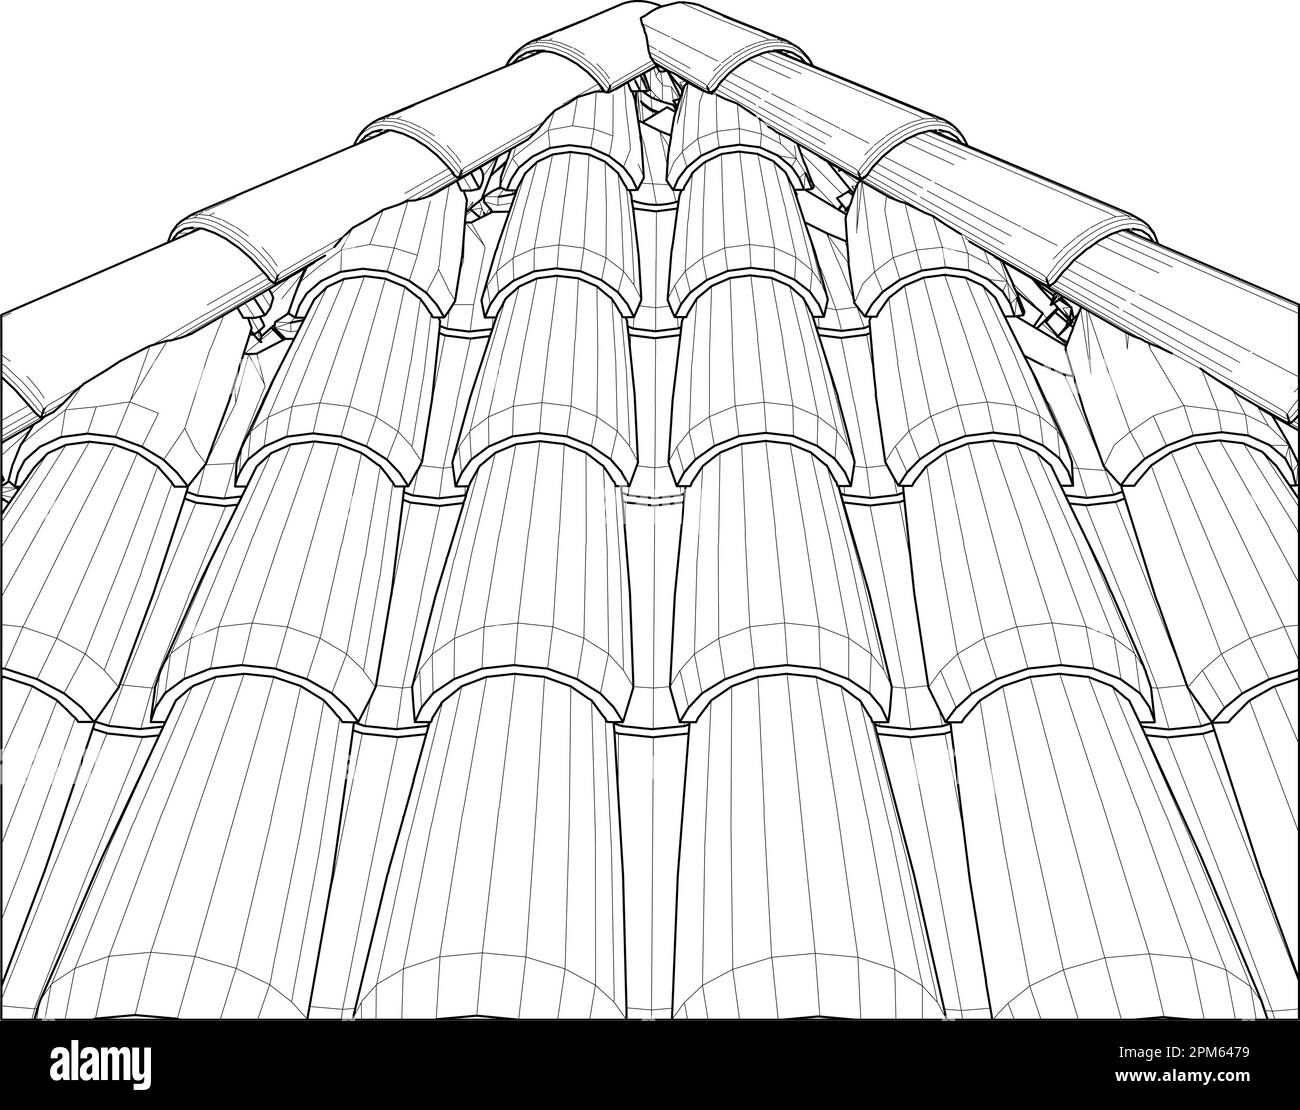 Vettore Tile Roof. Illustrazione isolata su sfondo bianco. Un'illustrazione vettoriale dello sfondo della tessera del tetto. Illustrazione Vettoriale